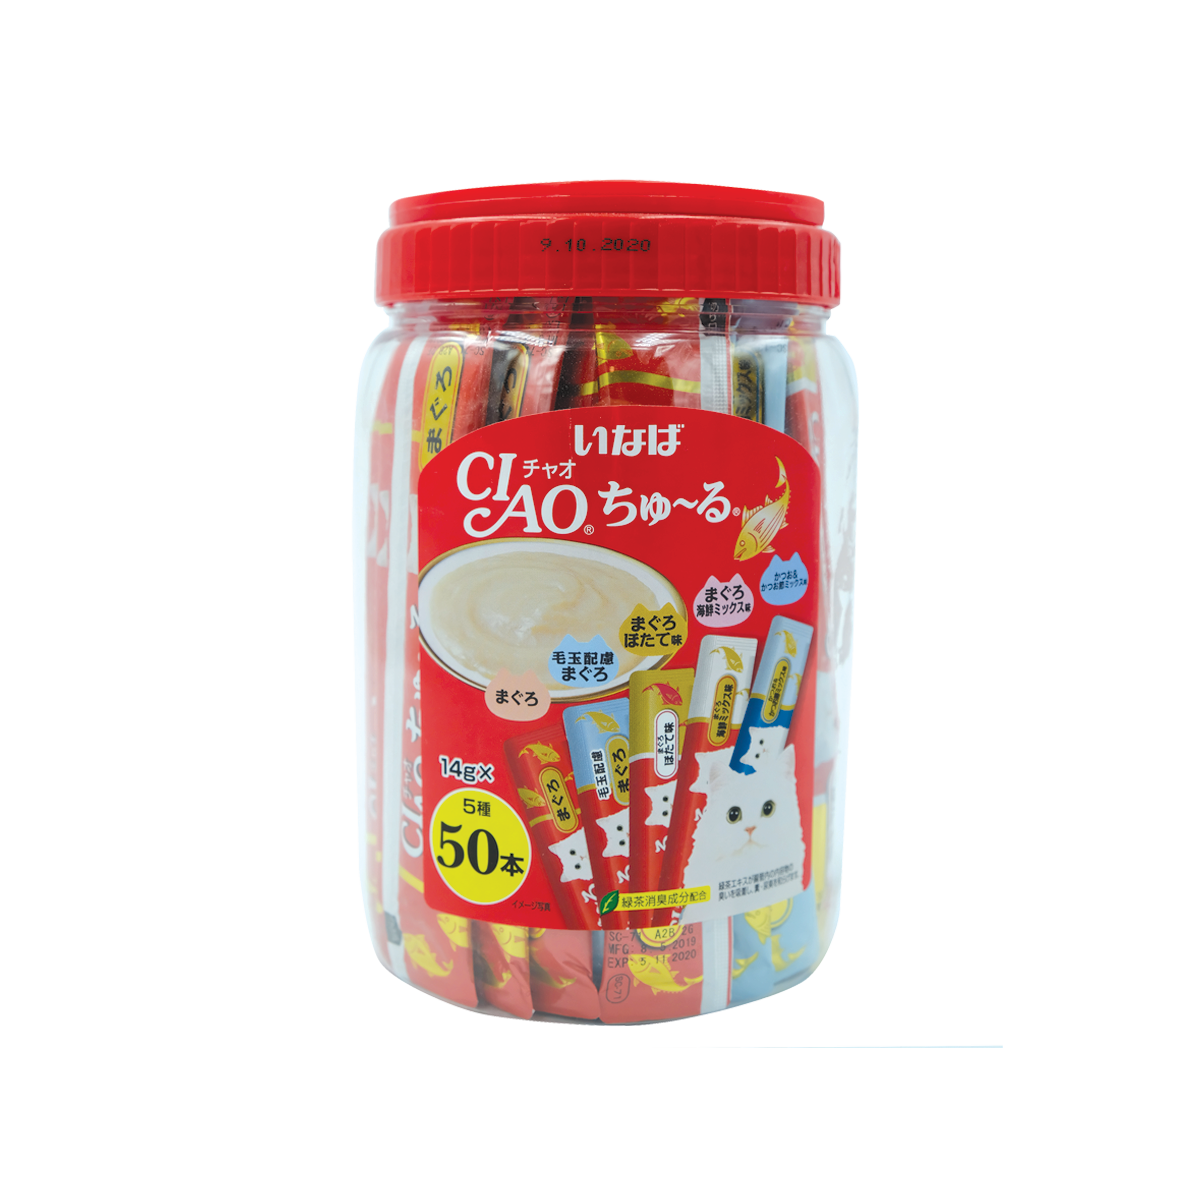 CIAO Churu Box Set Cream Snack for cats Mixed Tuna Flavors เชาว์ ชูหรุ กระปุกขนมครีมแมวเลีย รวมรสปลาทูน่า ขนาด 14 กรัม (50 แท่ง)